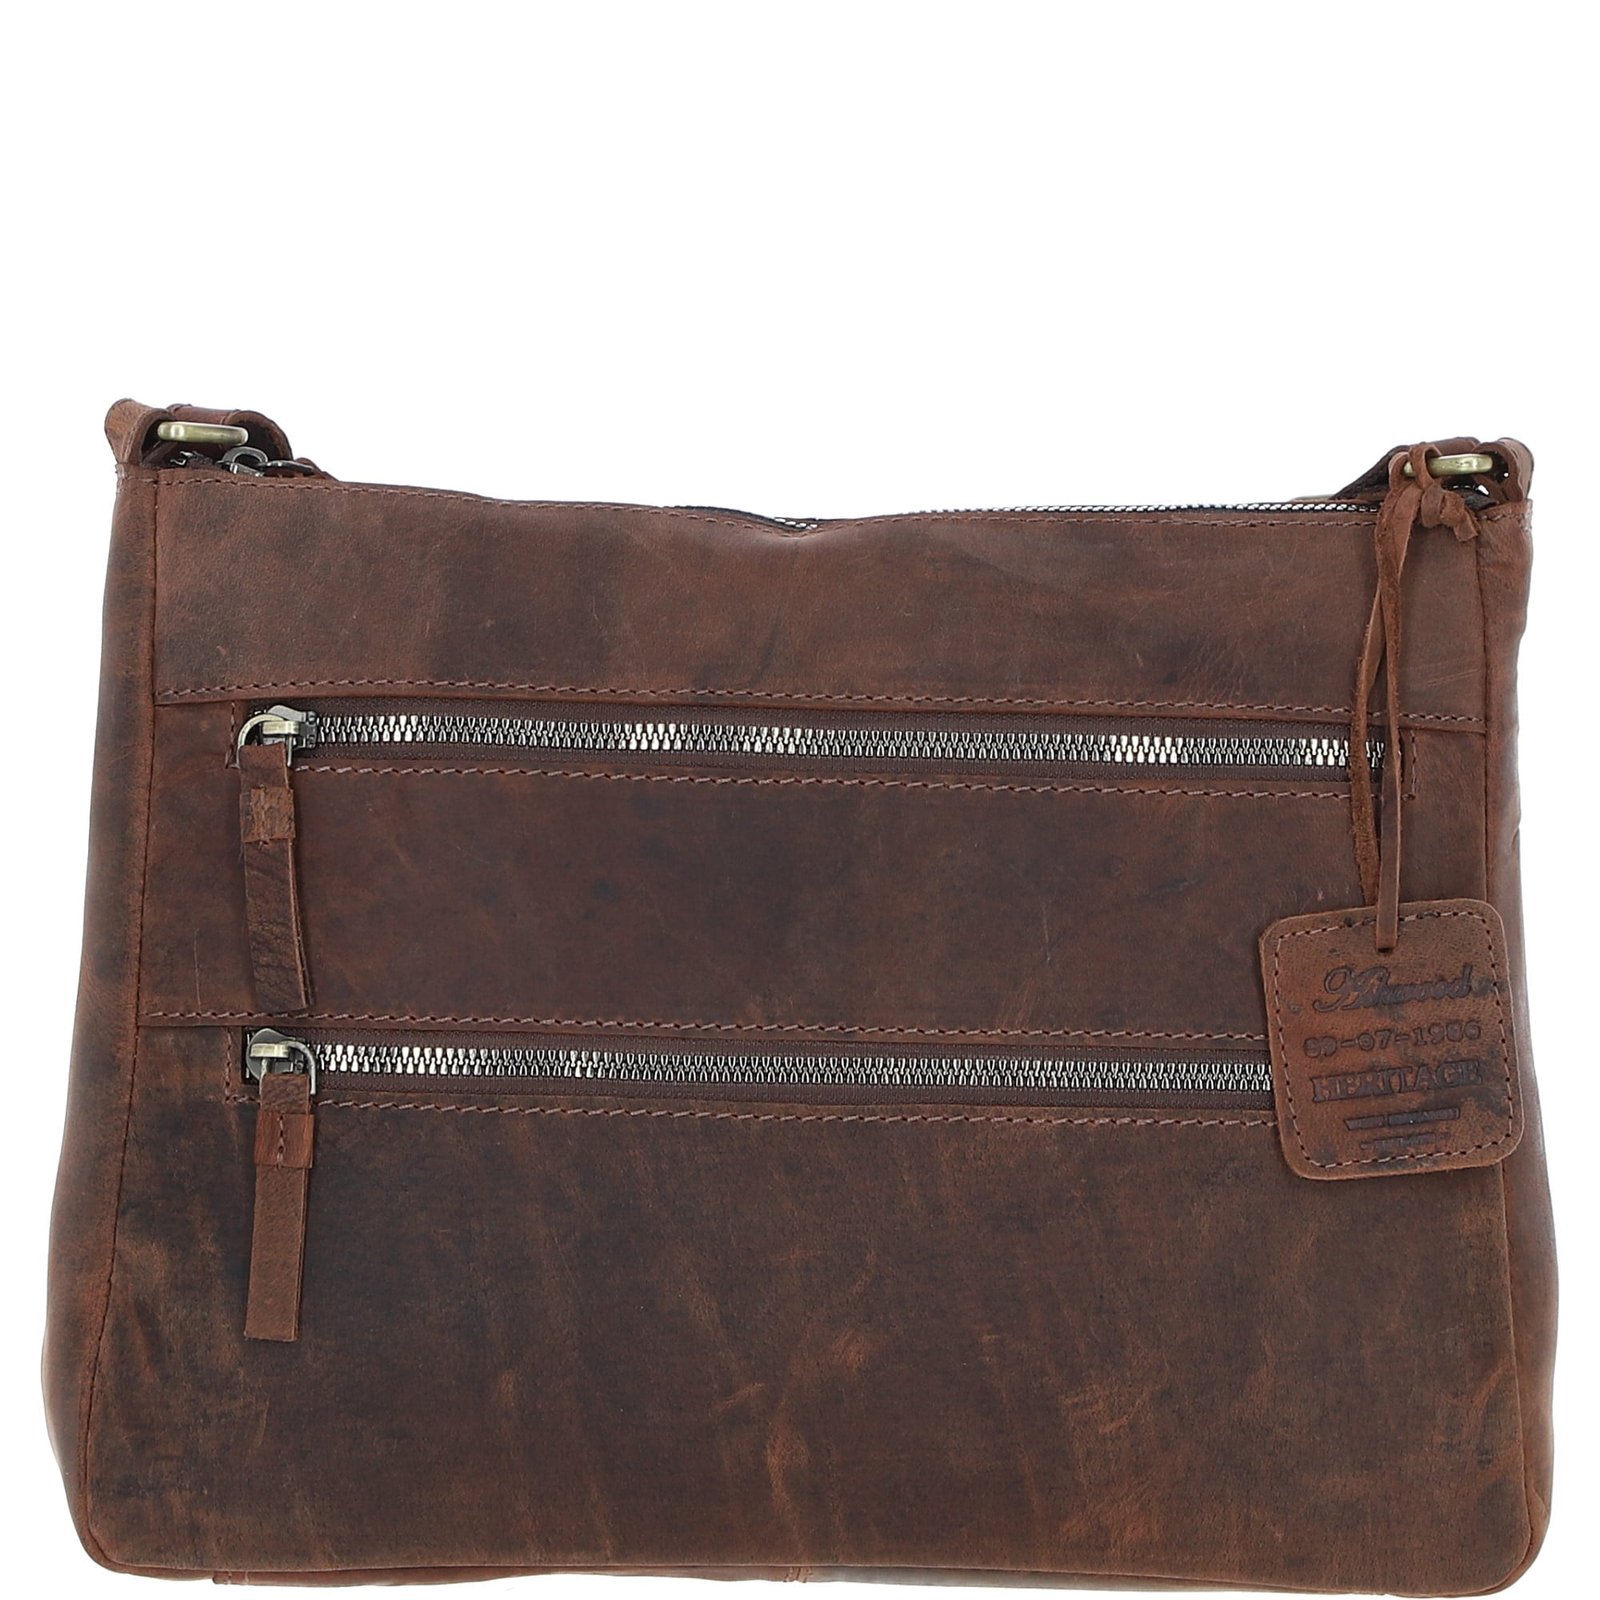 Vintage Ashwood Leather Handbag: Bewdley Mud/Brown NA from Ashwood Handbags